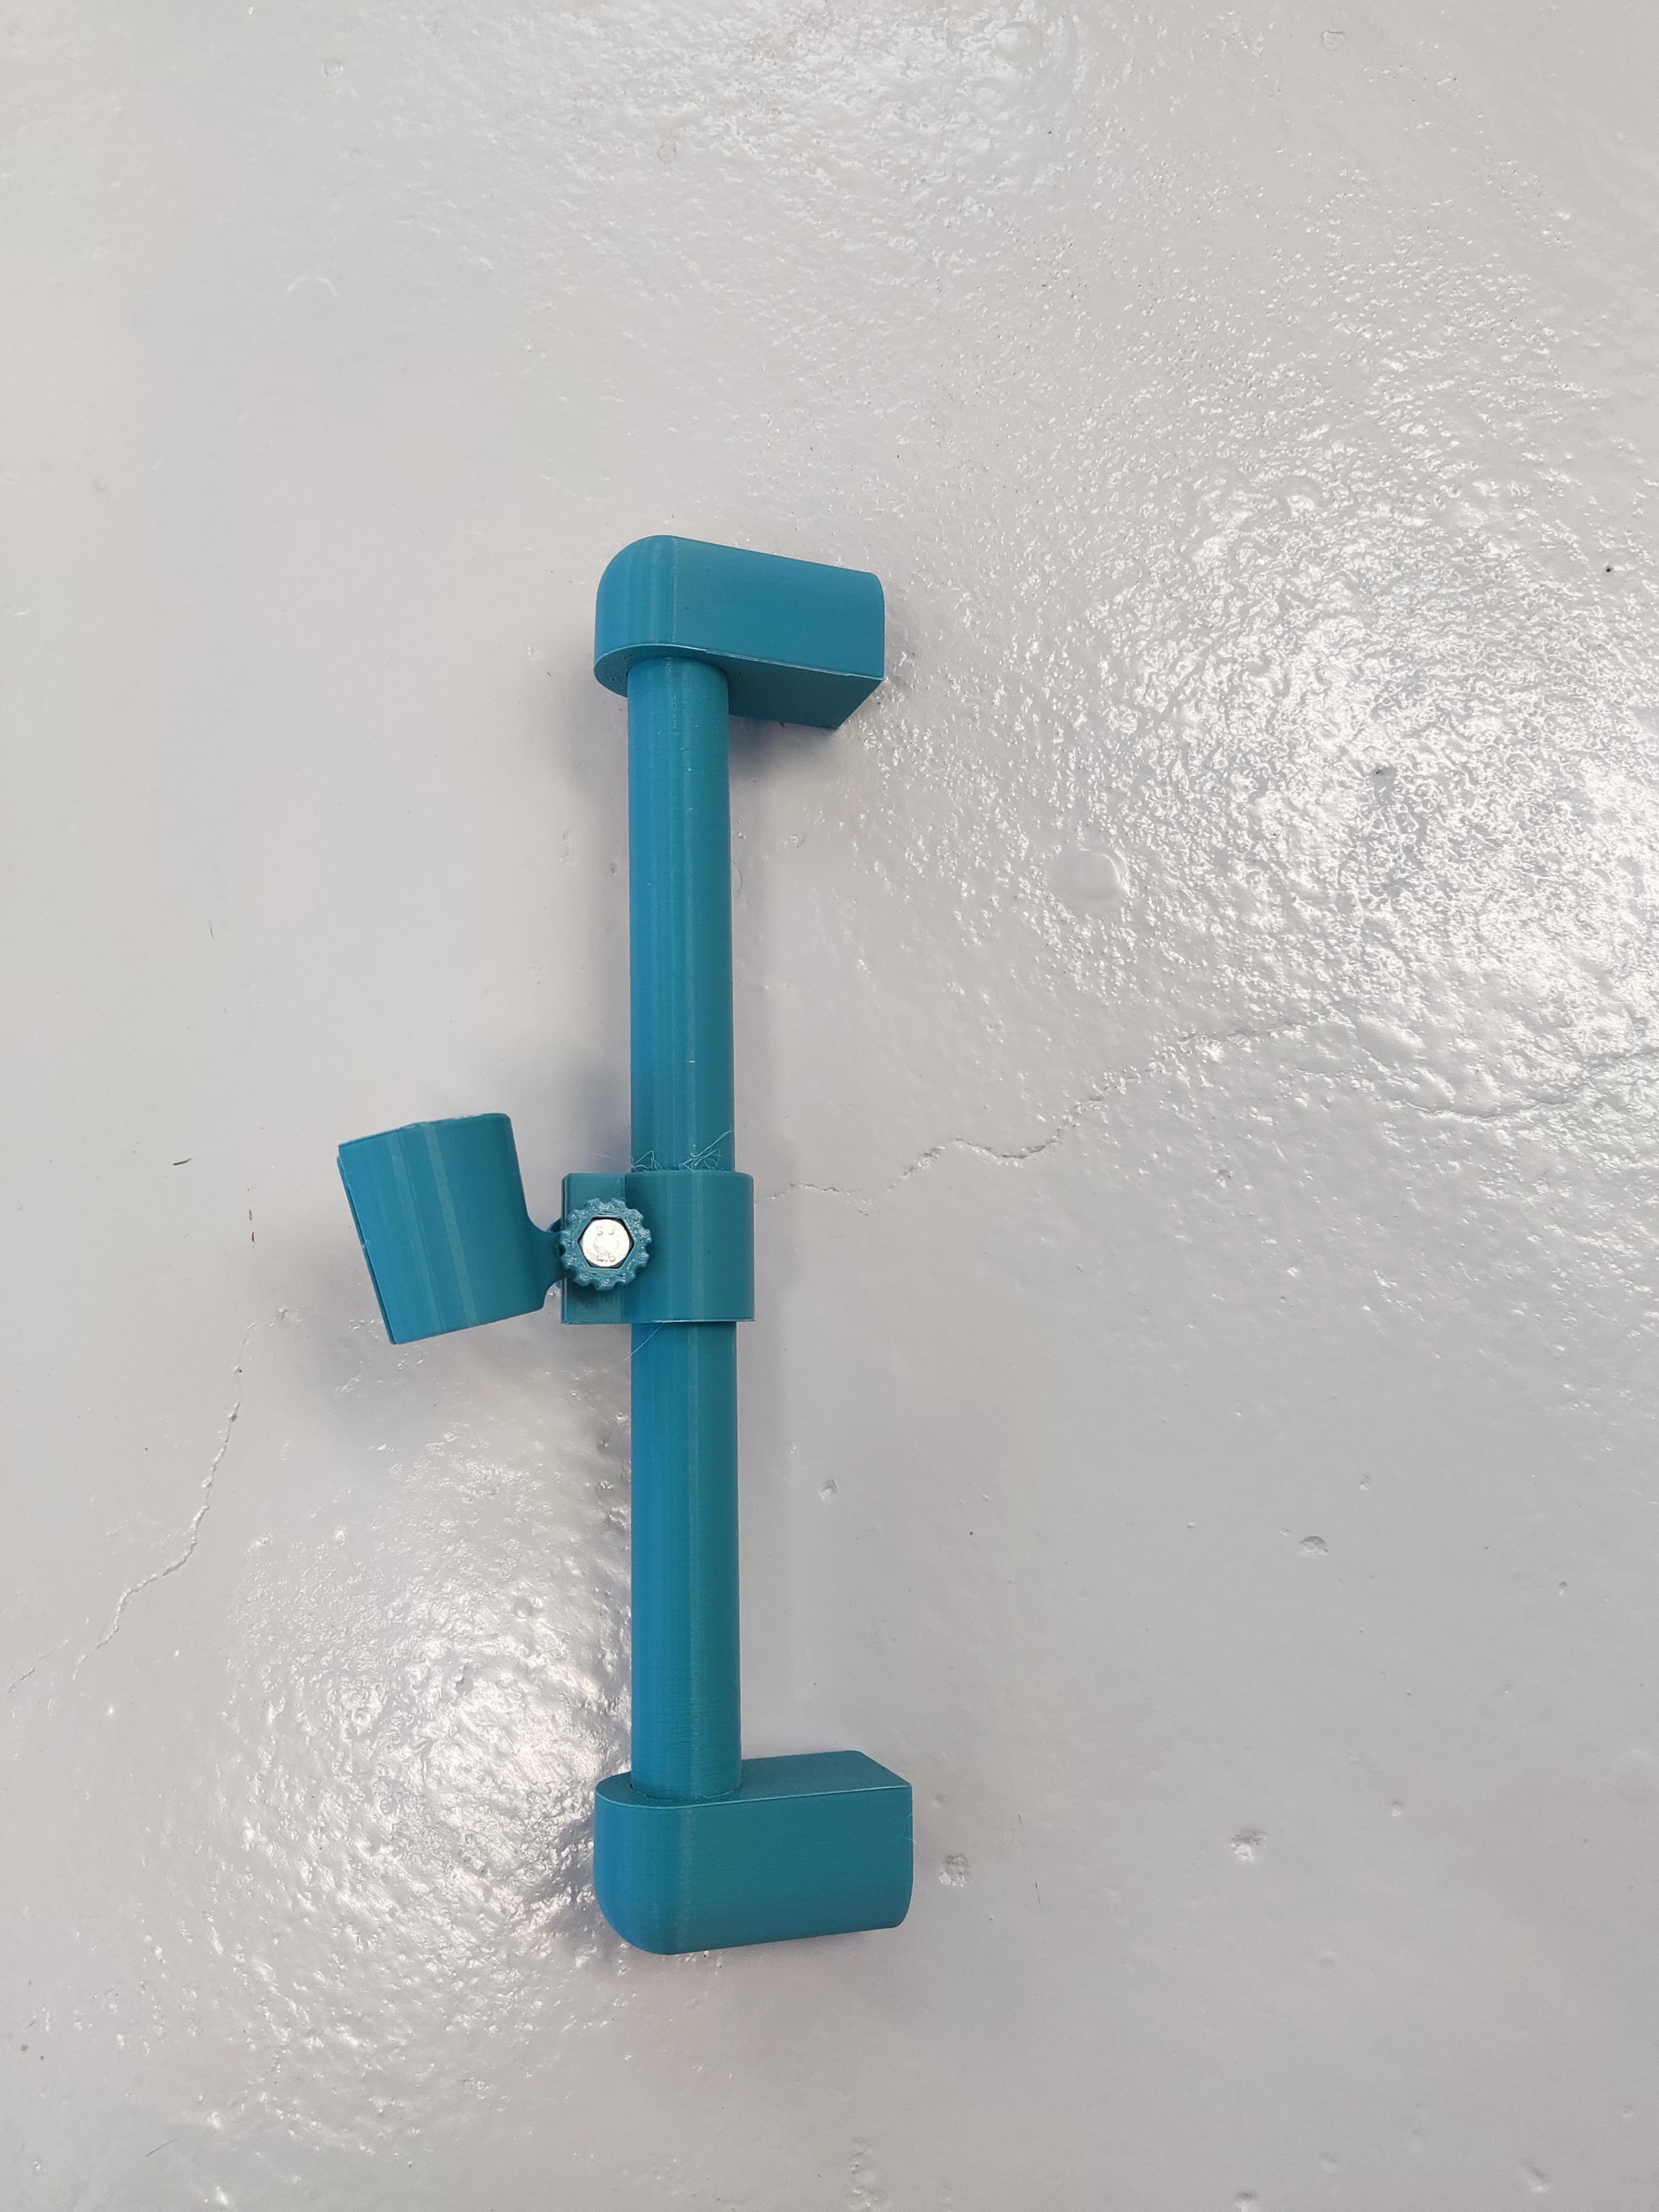 Shower riser rail and head holder.stl 3d model